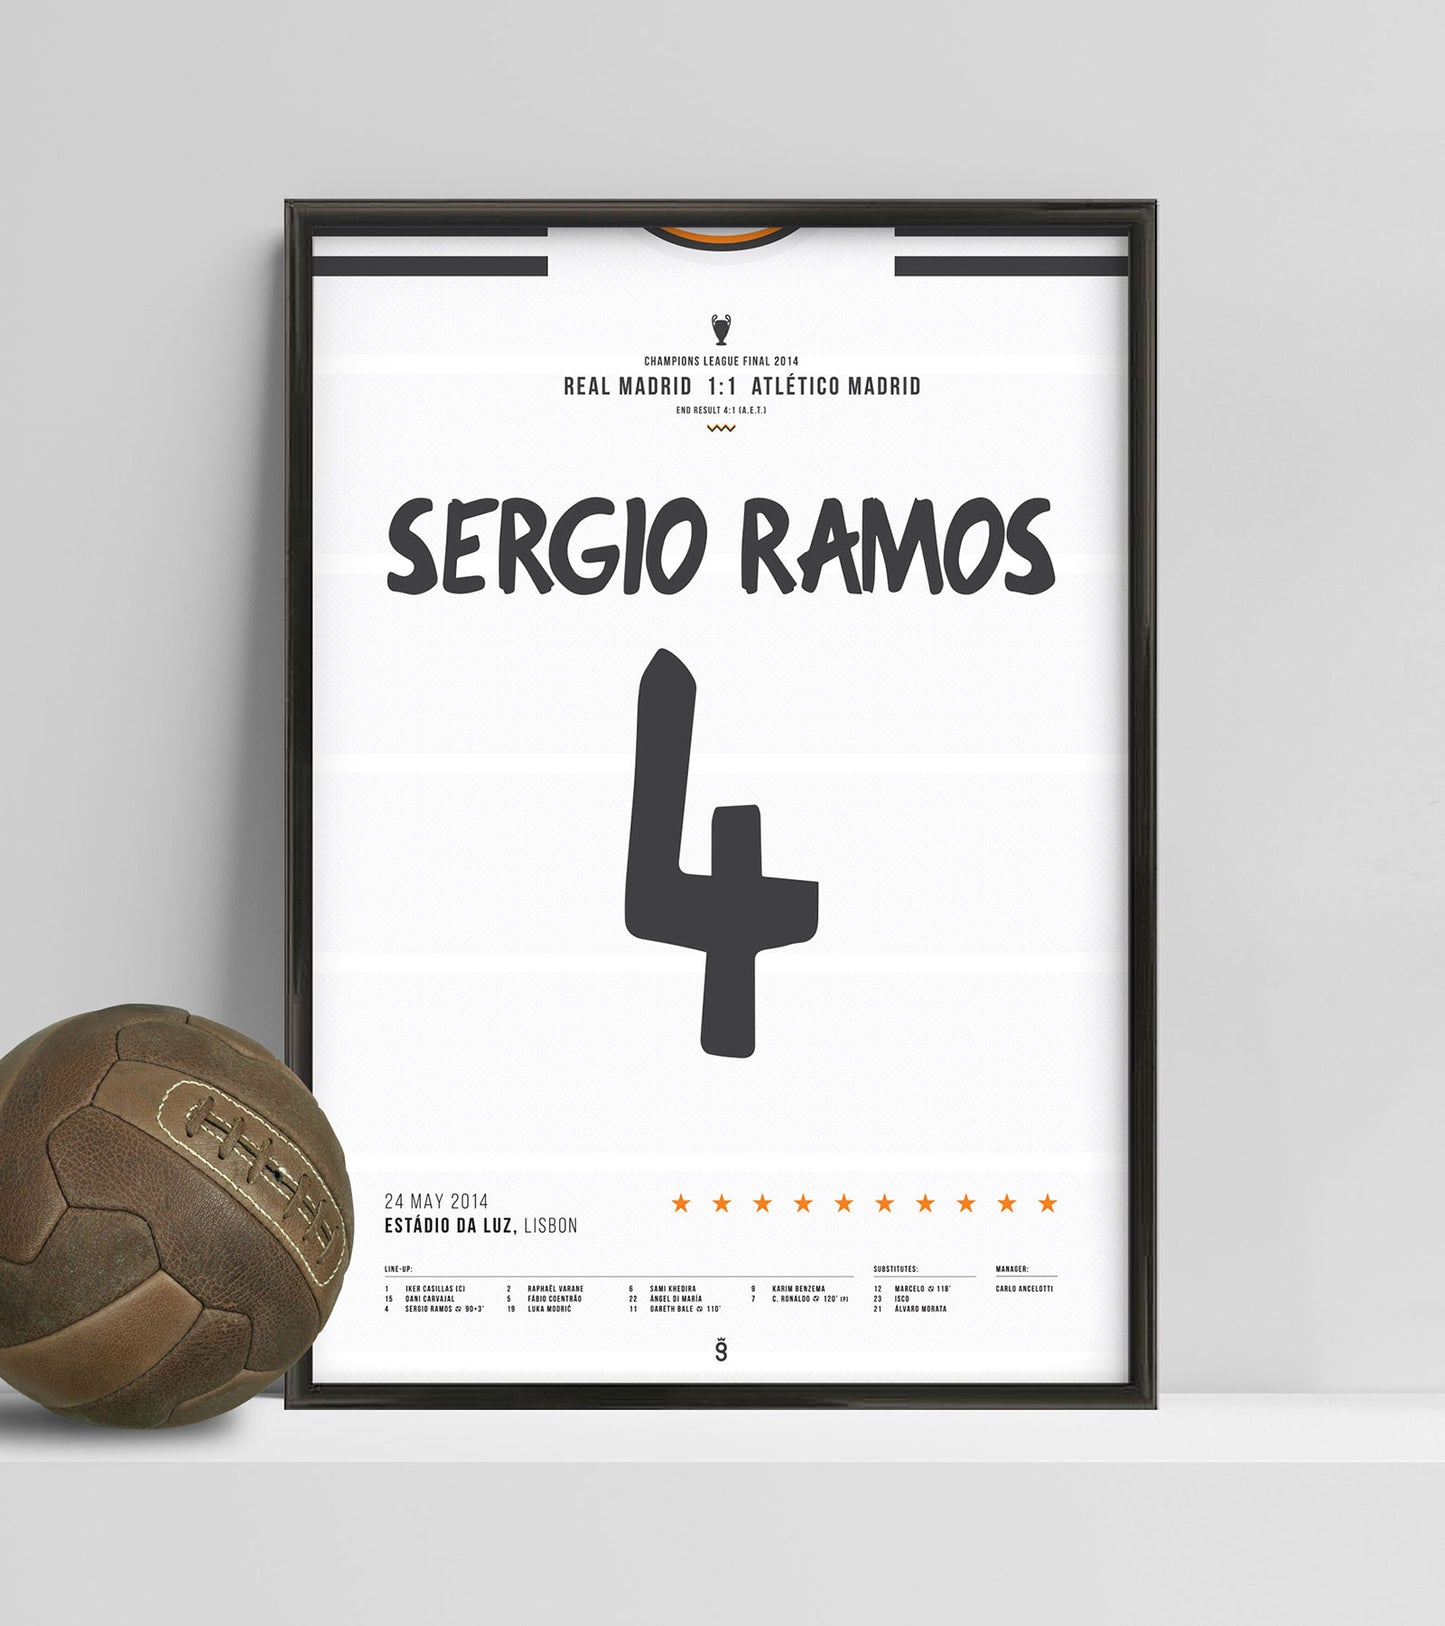 But "La Décima" de Sergio Ramos